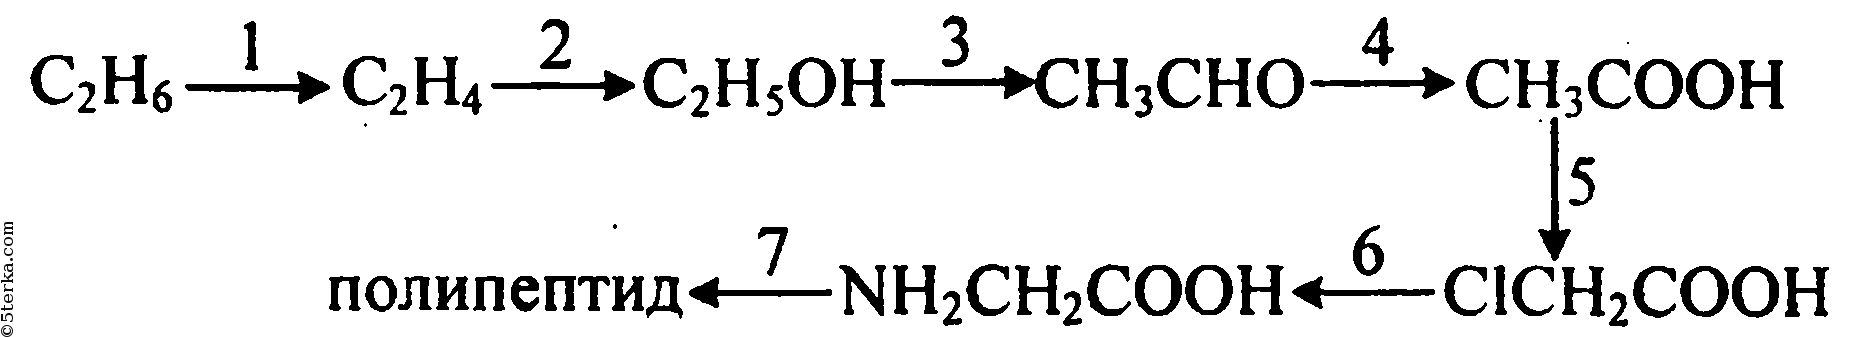 Хлорэтан образуется в реакции